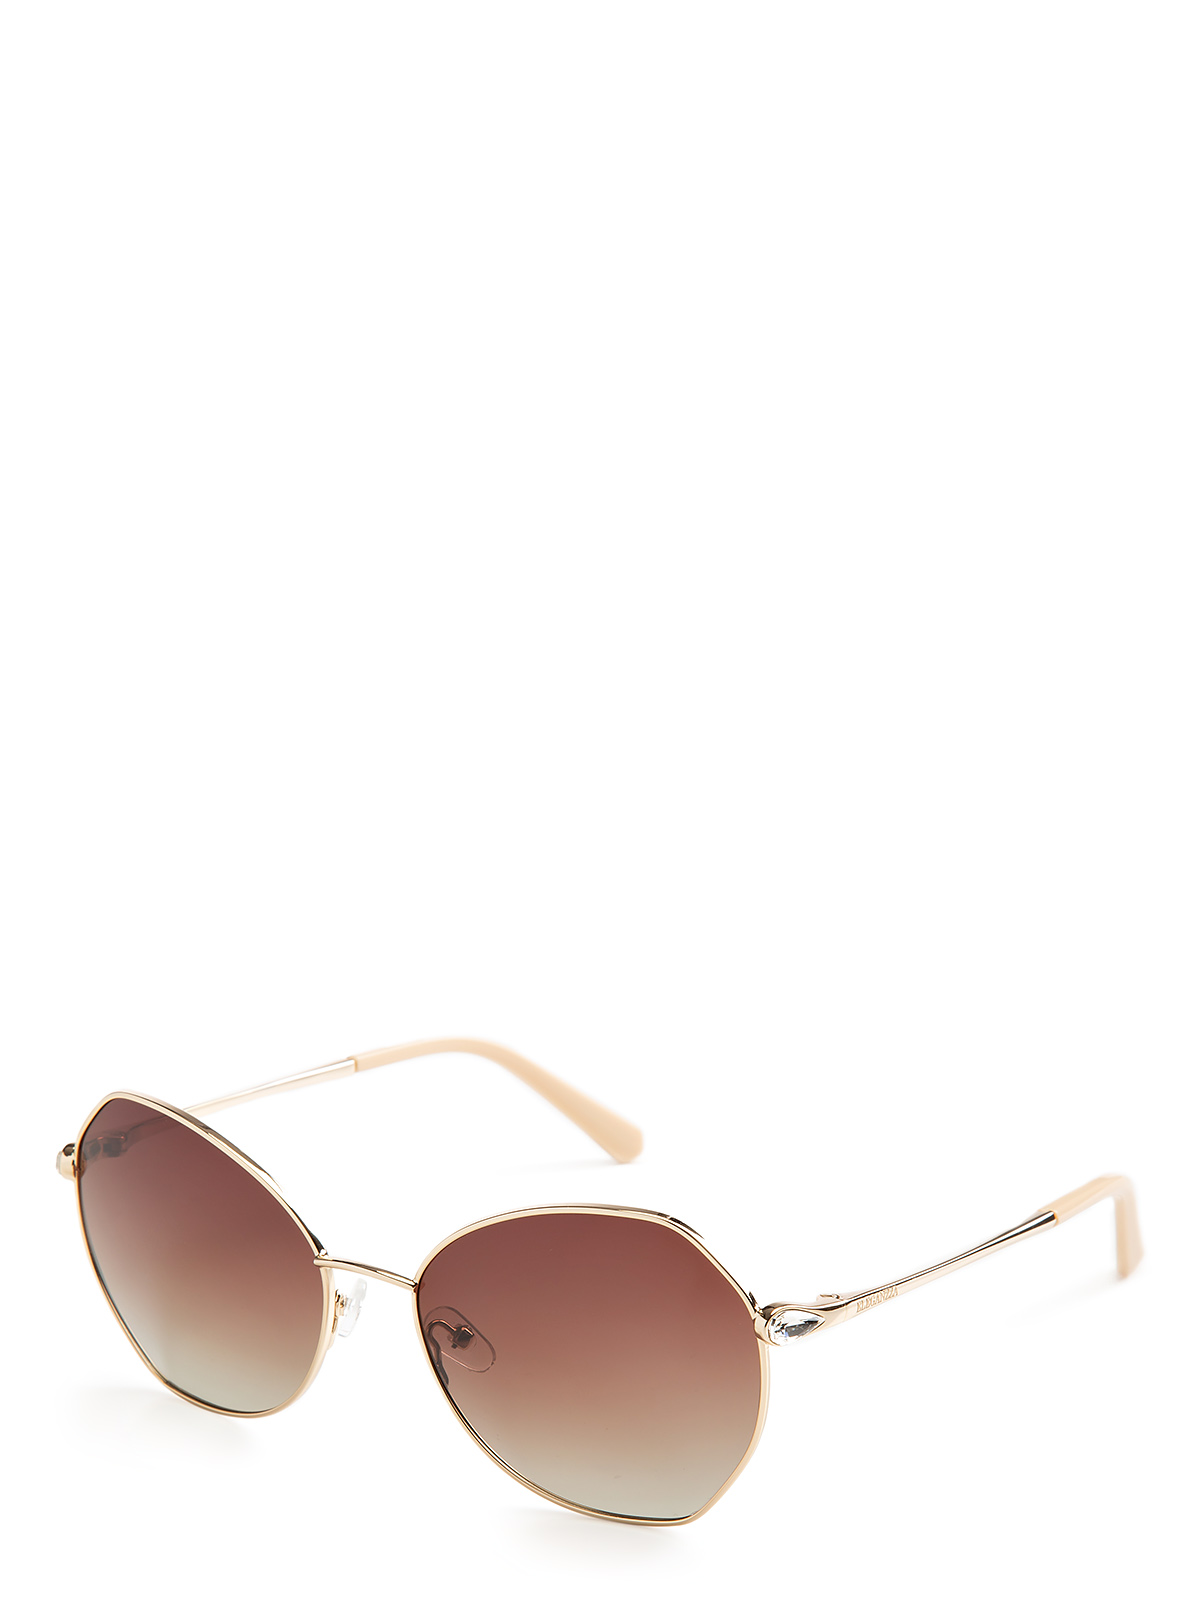 Солнцезащитные очки женские Eleganzza ZZ-23112C1 розовые